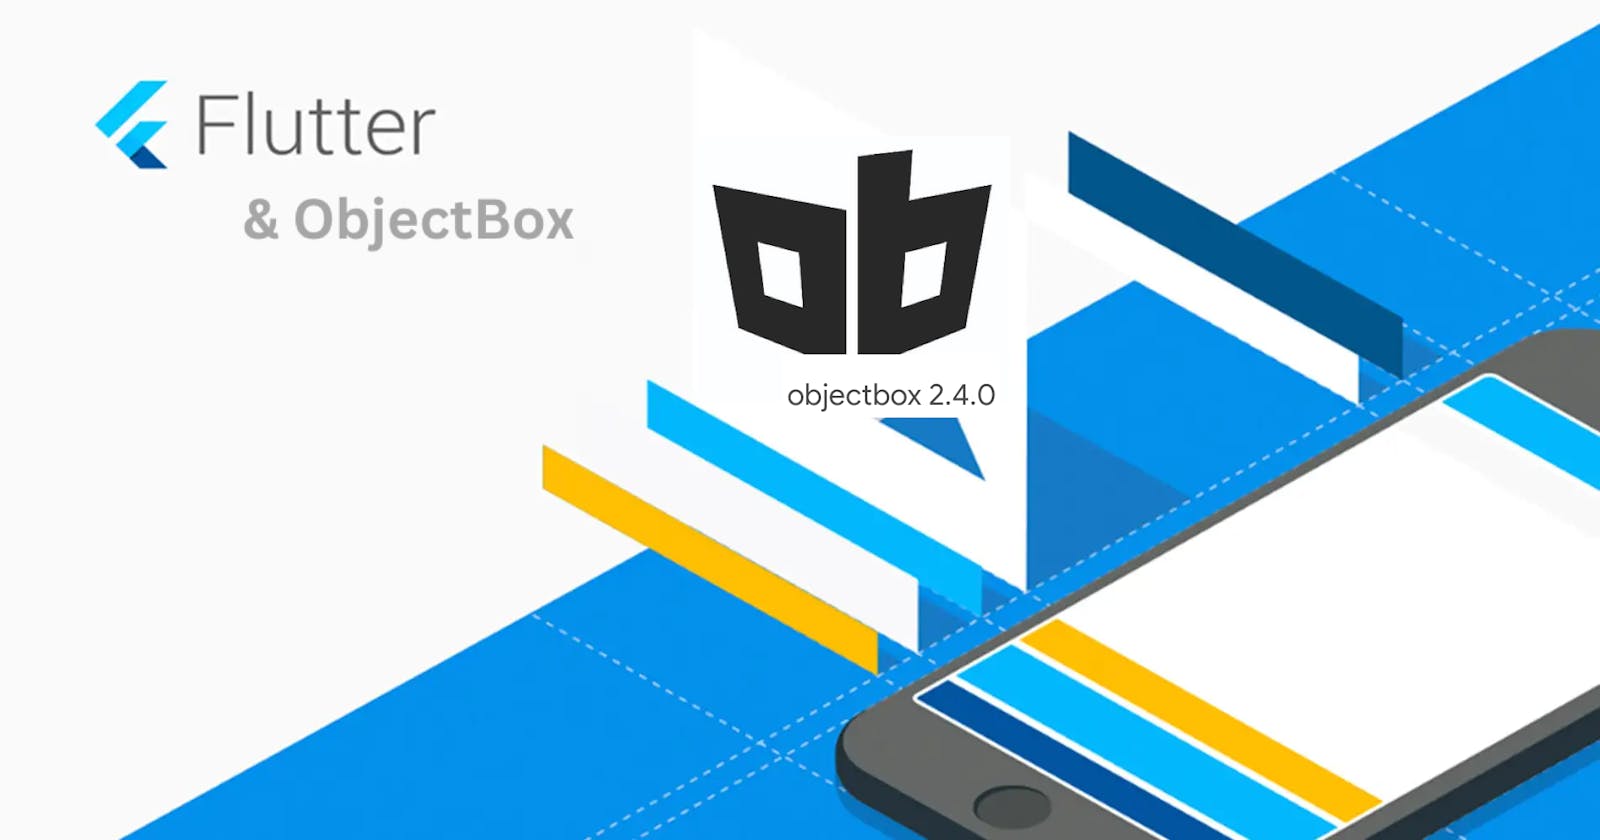 Utilizing ObjectBox in Flutter